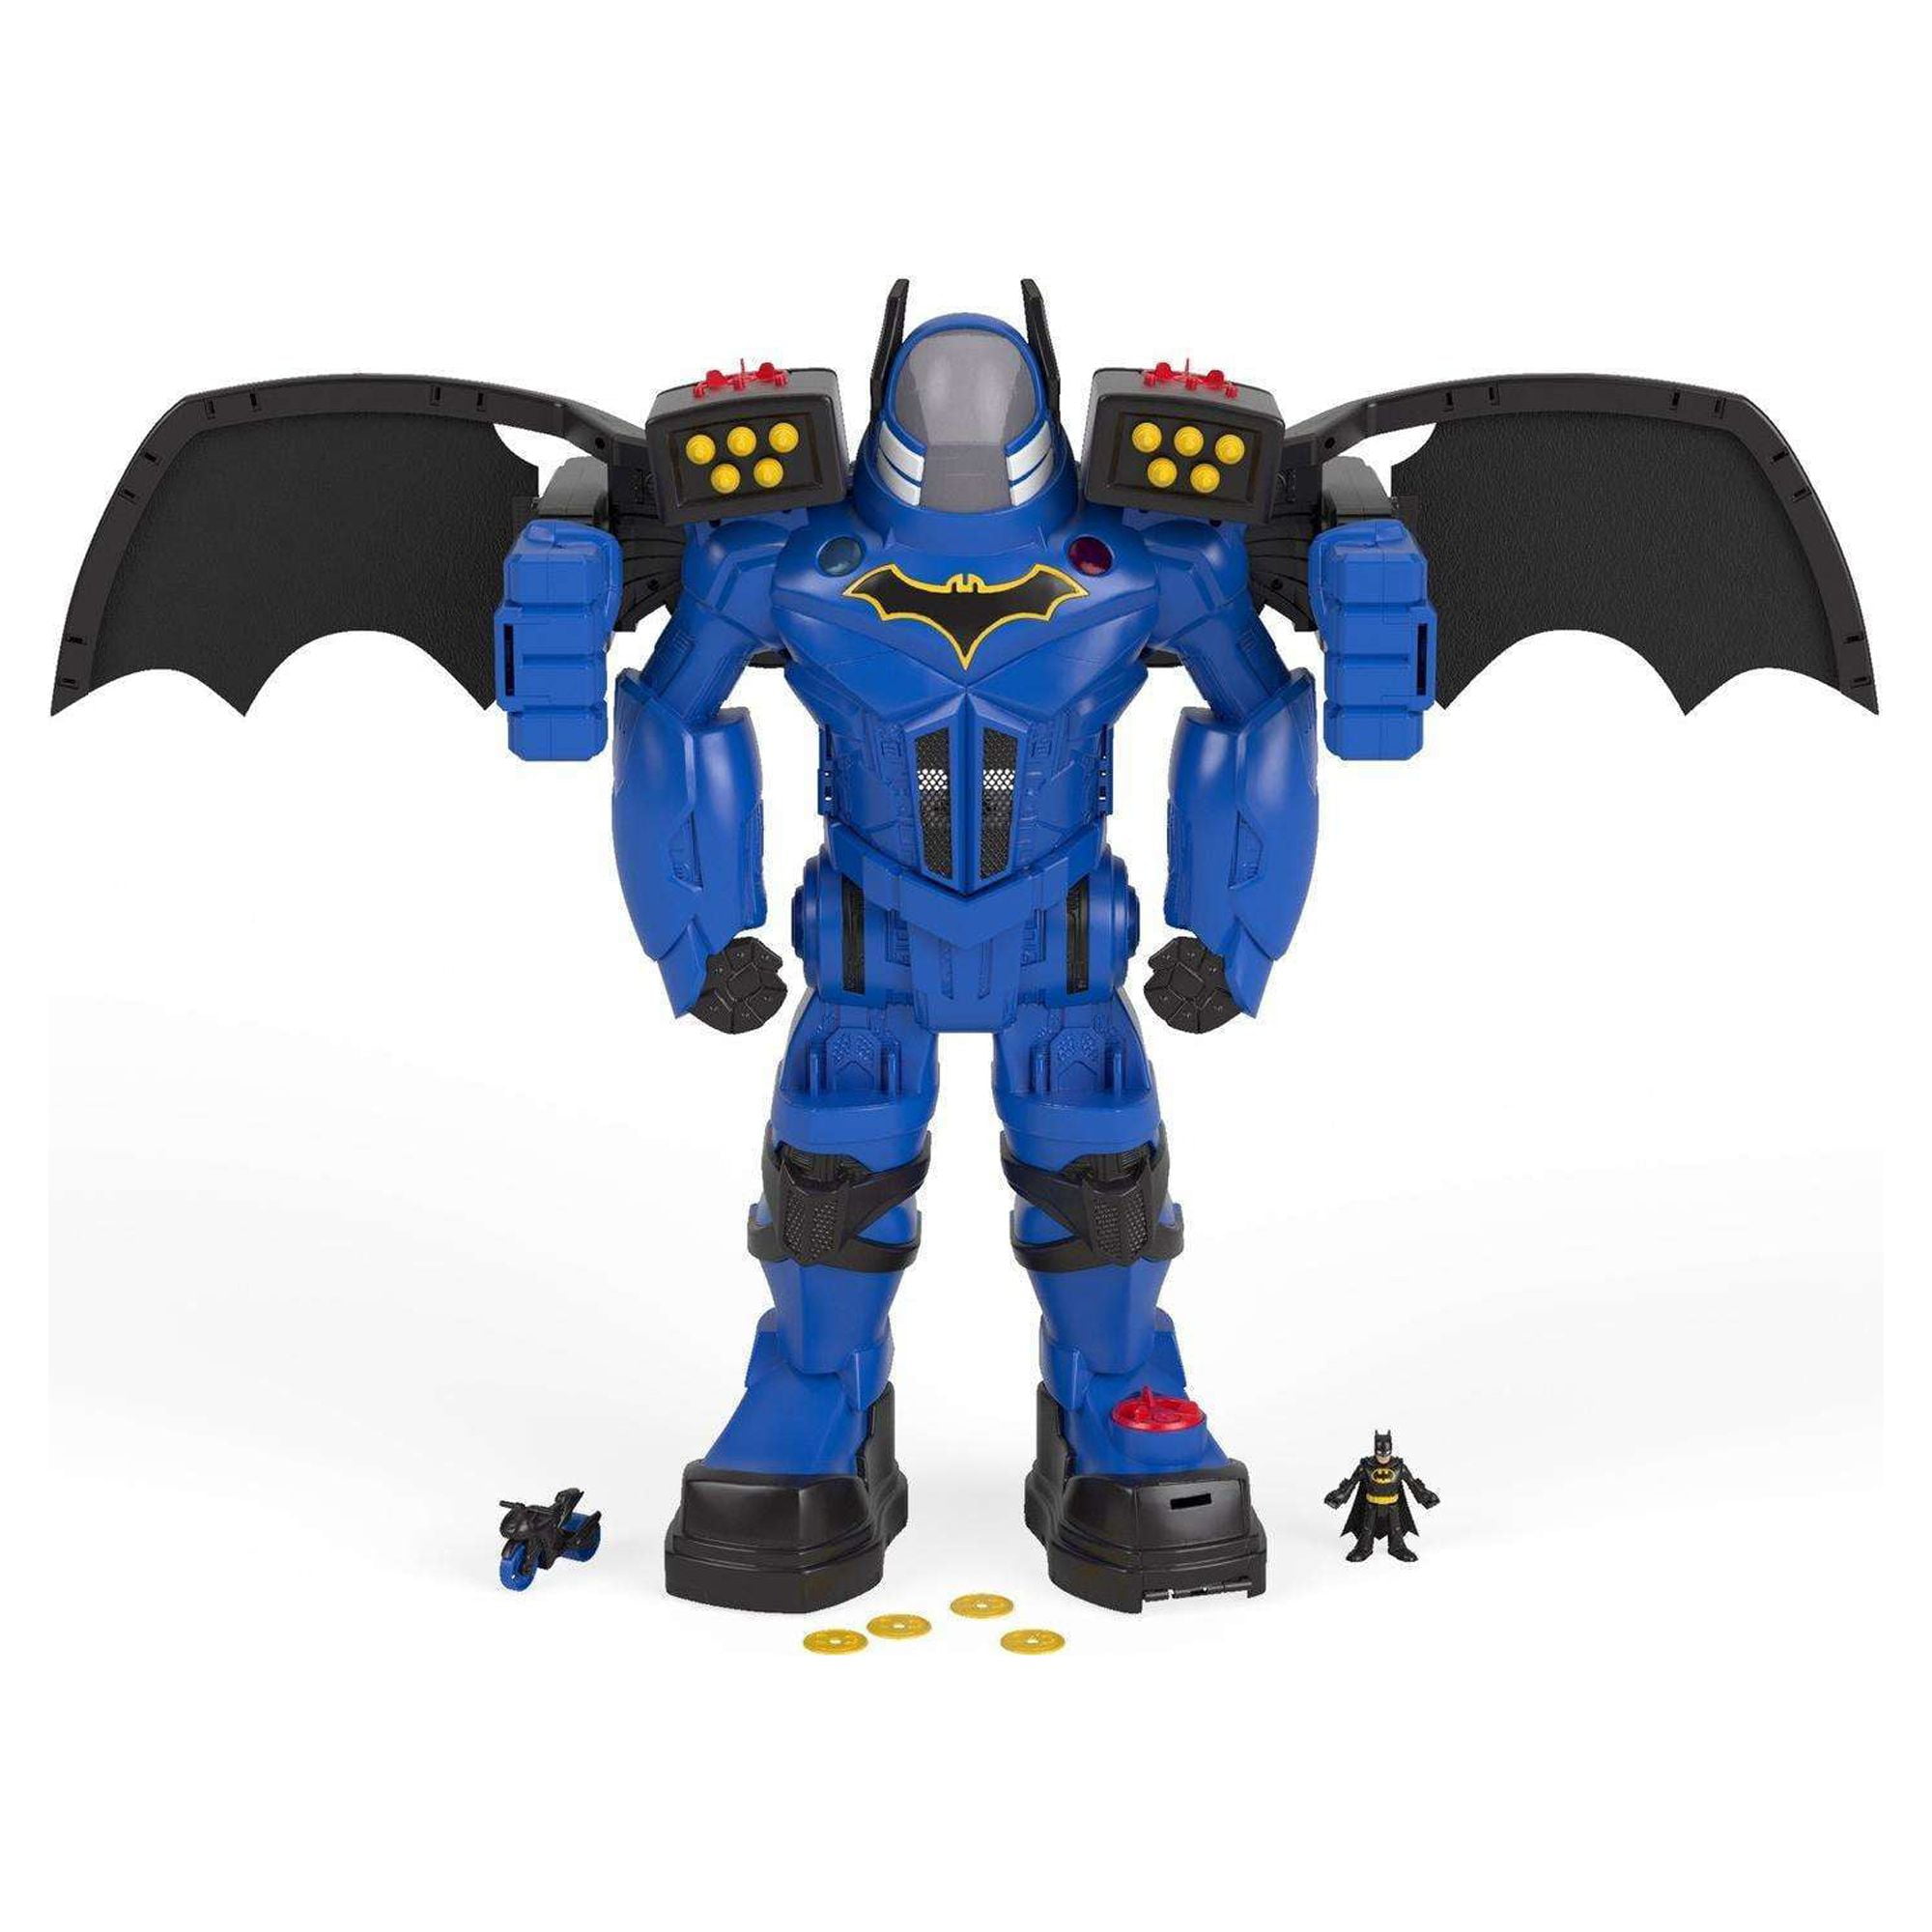 Juguete Robot Batman 60cm Bat-tech Transforme Bat Imaginext IMAGINEXT